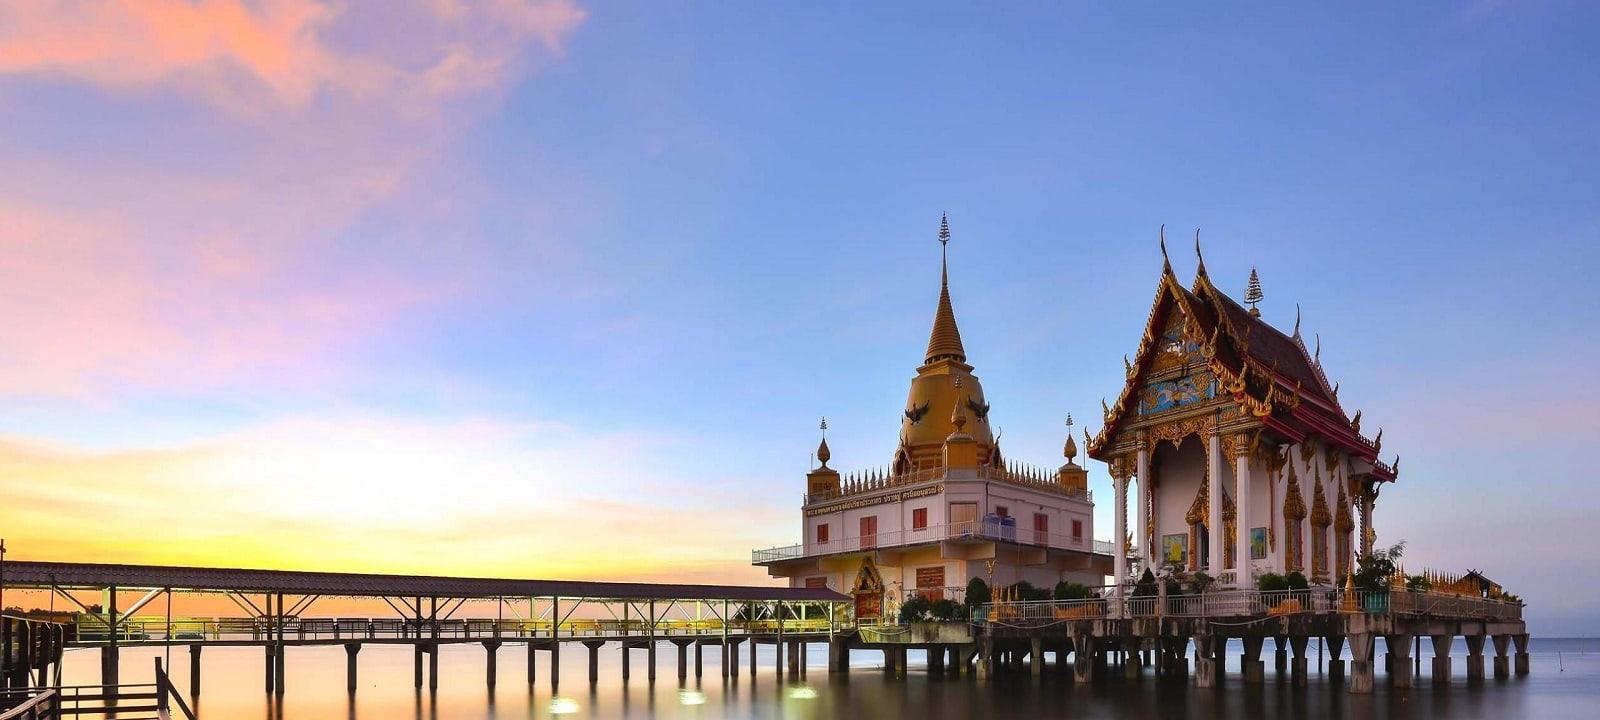 Les infos pratiques pour visiter le Laos